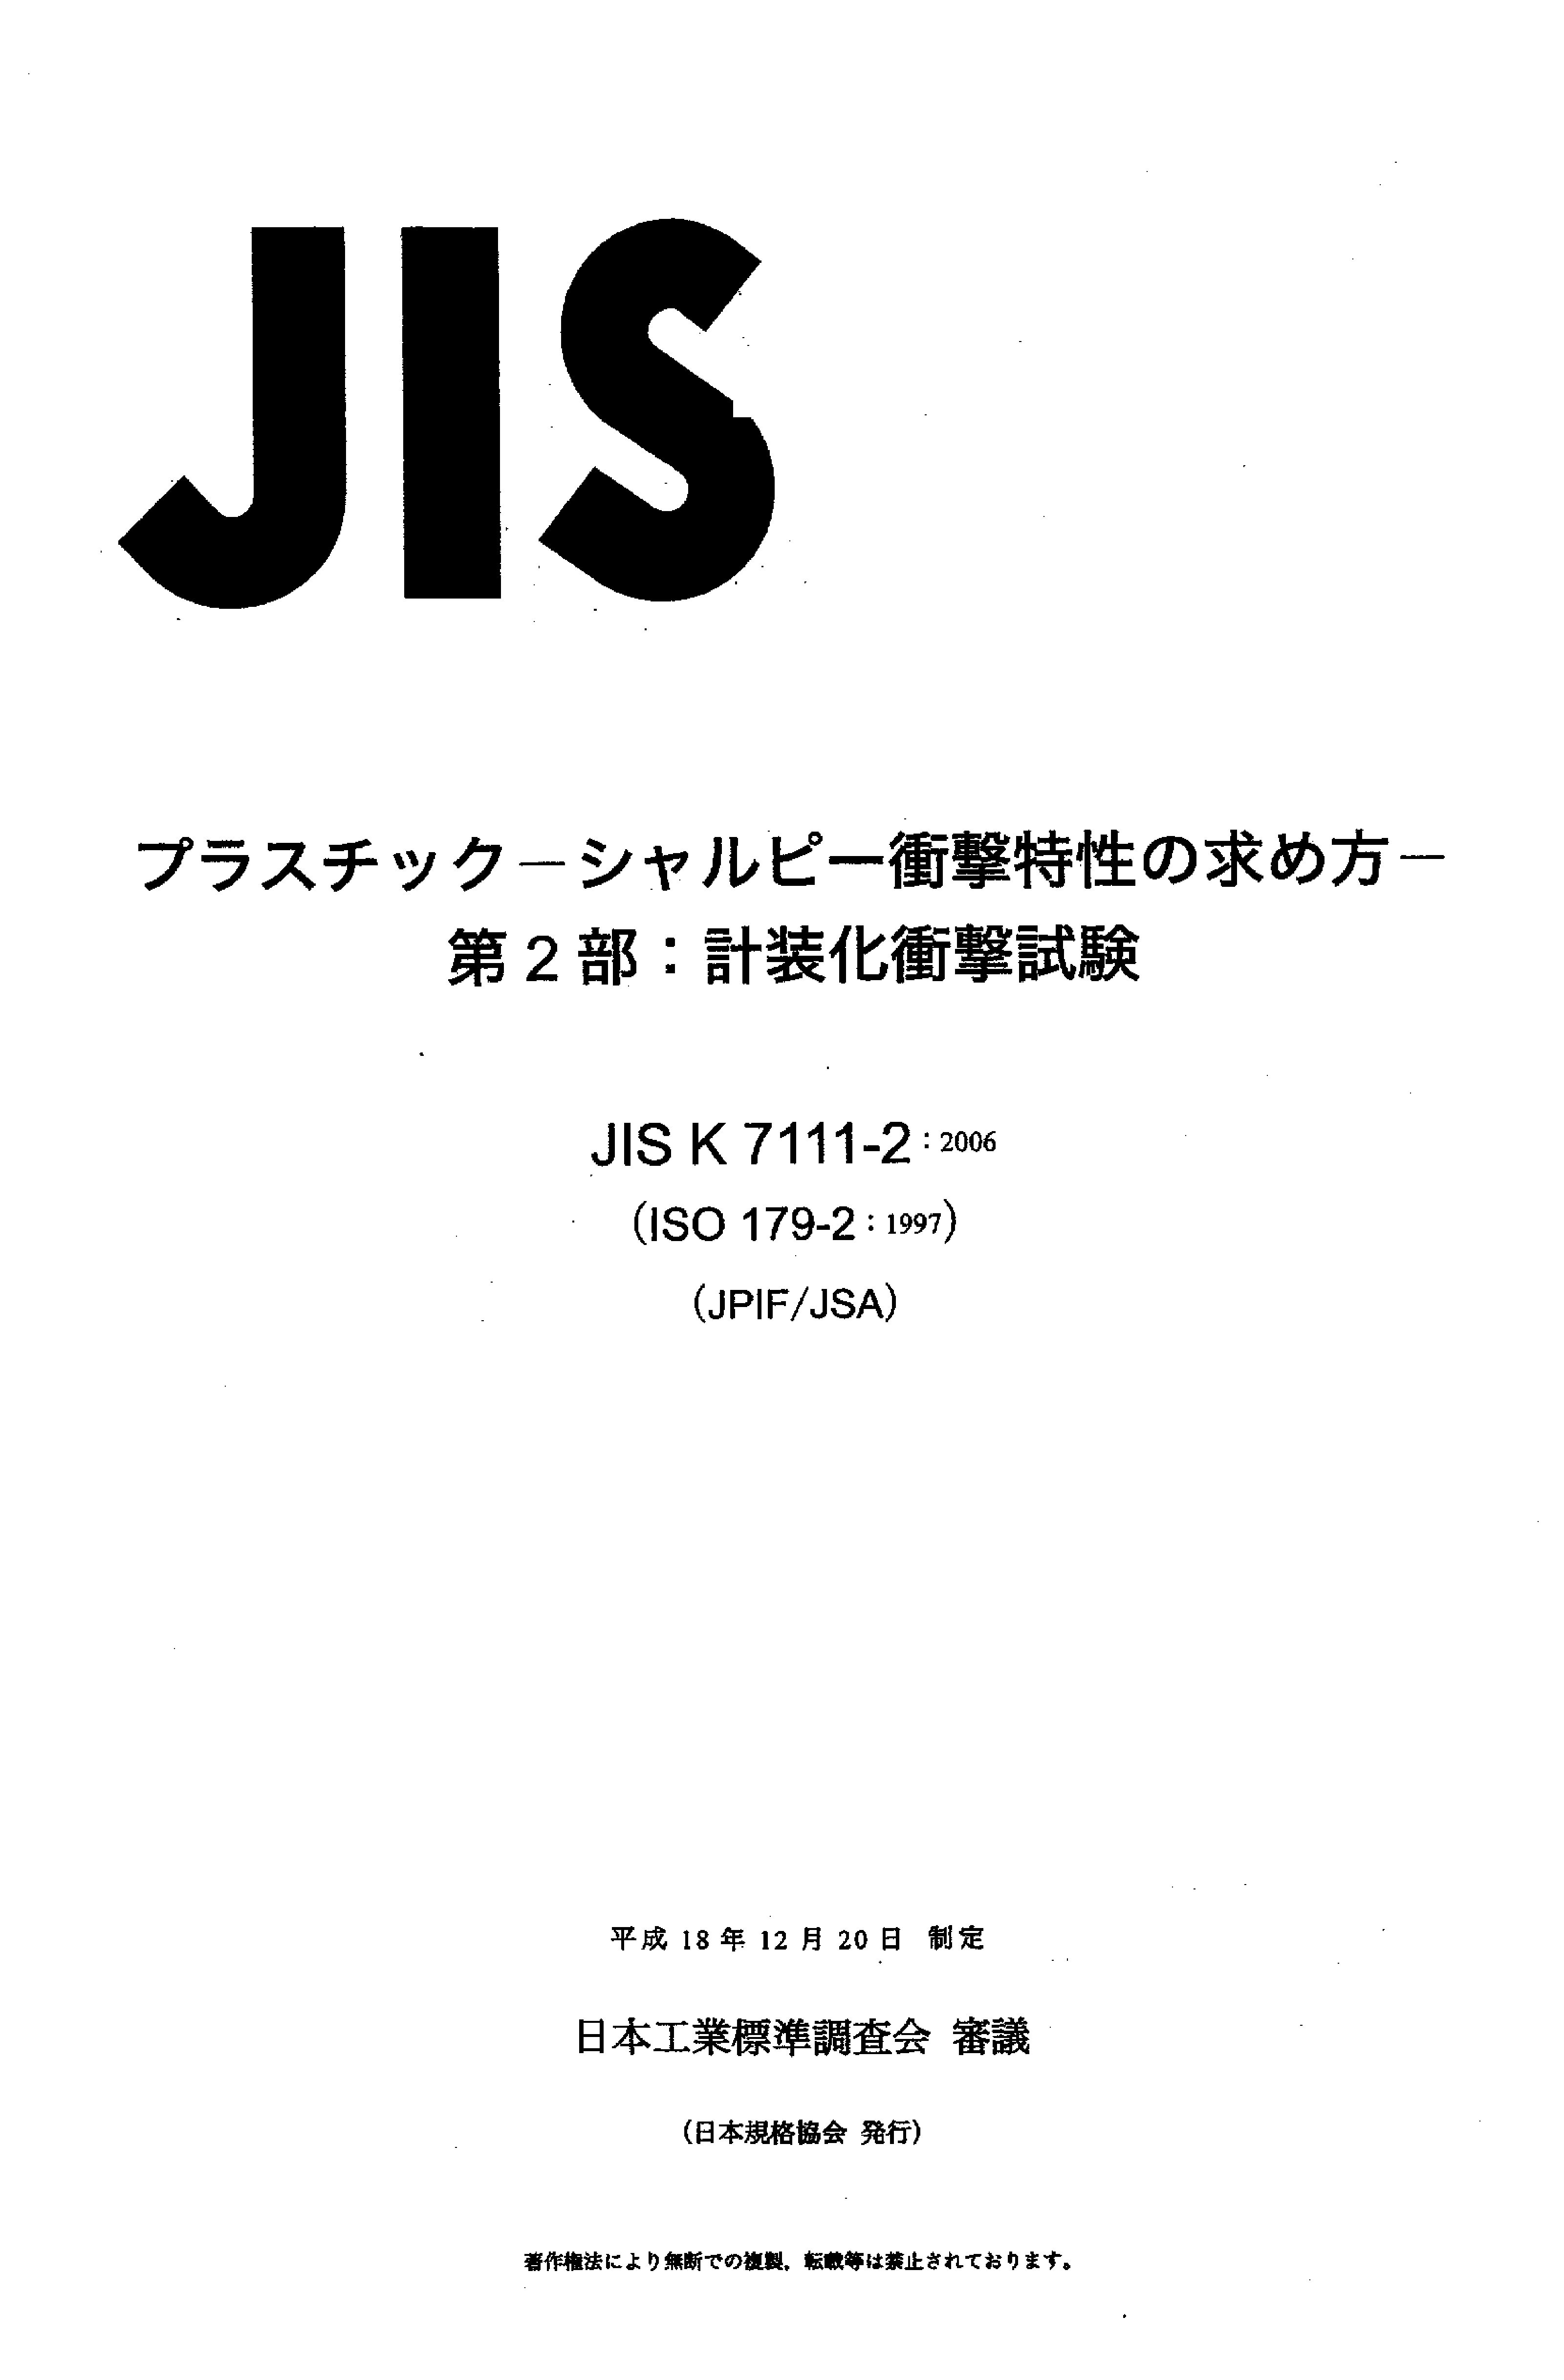 JIS K 7111-2:2006封面图